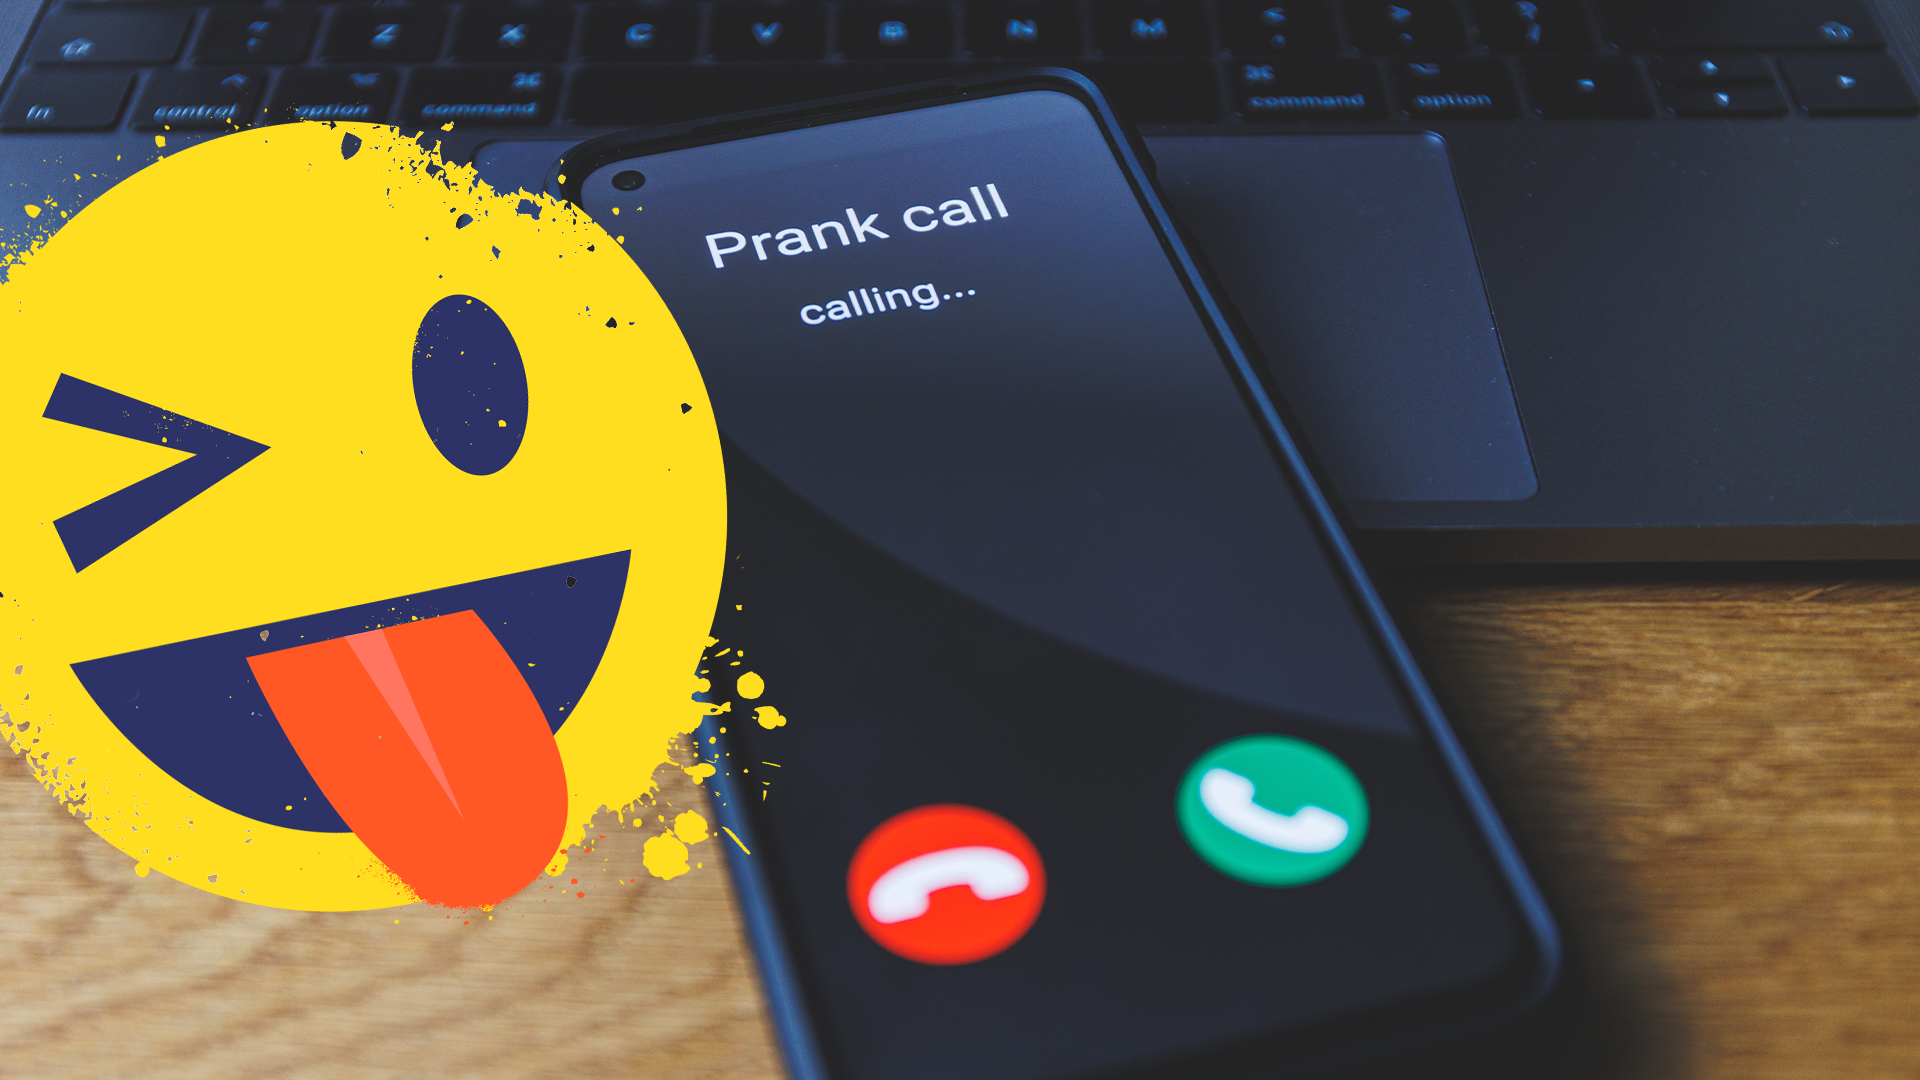 Cheeky emoji and a prank phone call